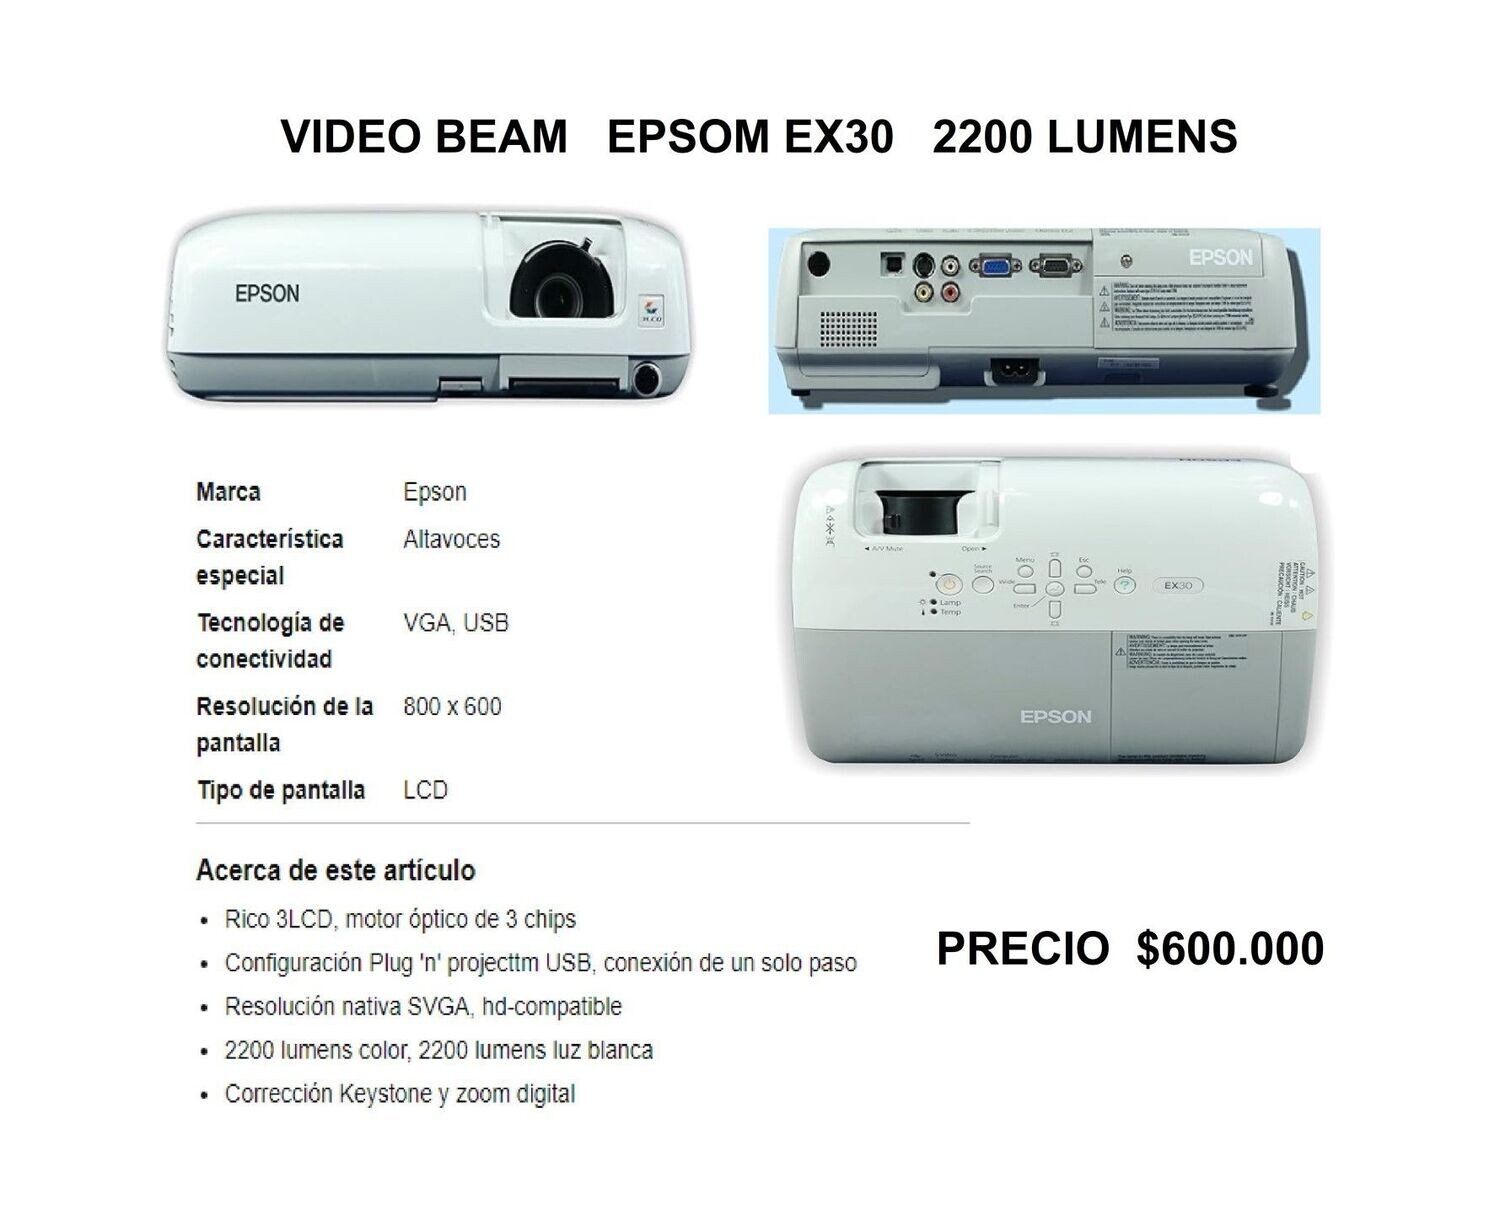 Videobeam EPSON EX30